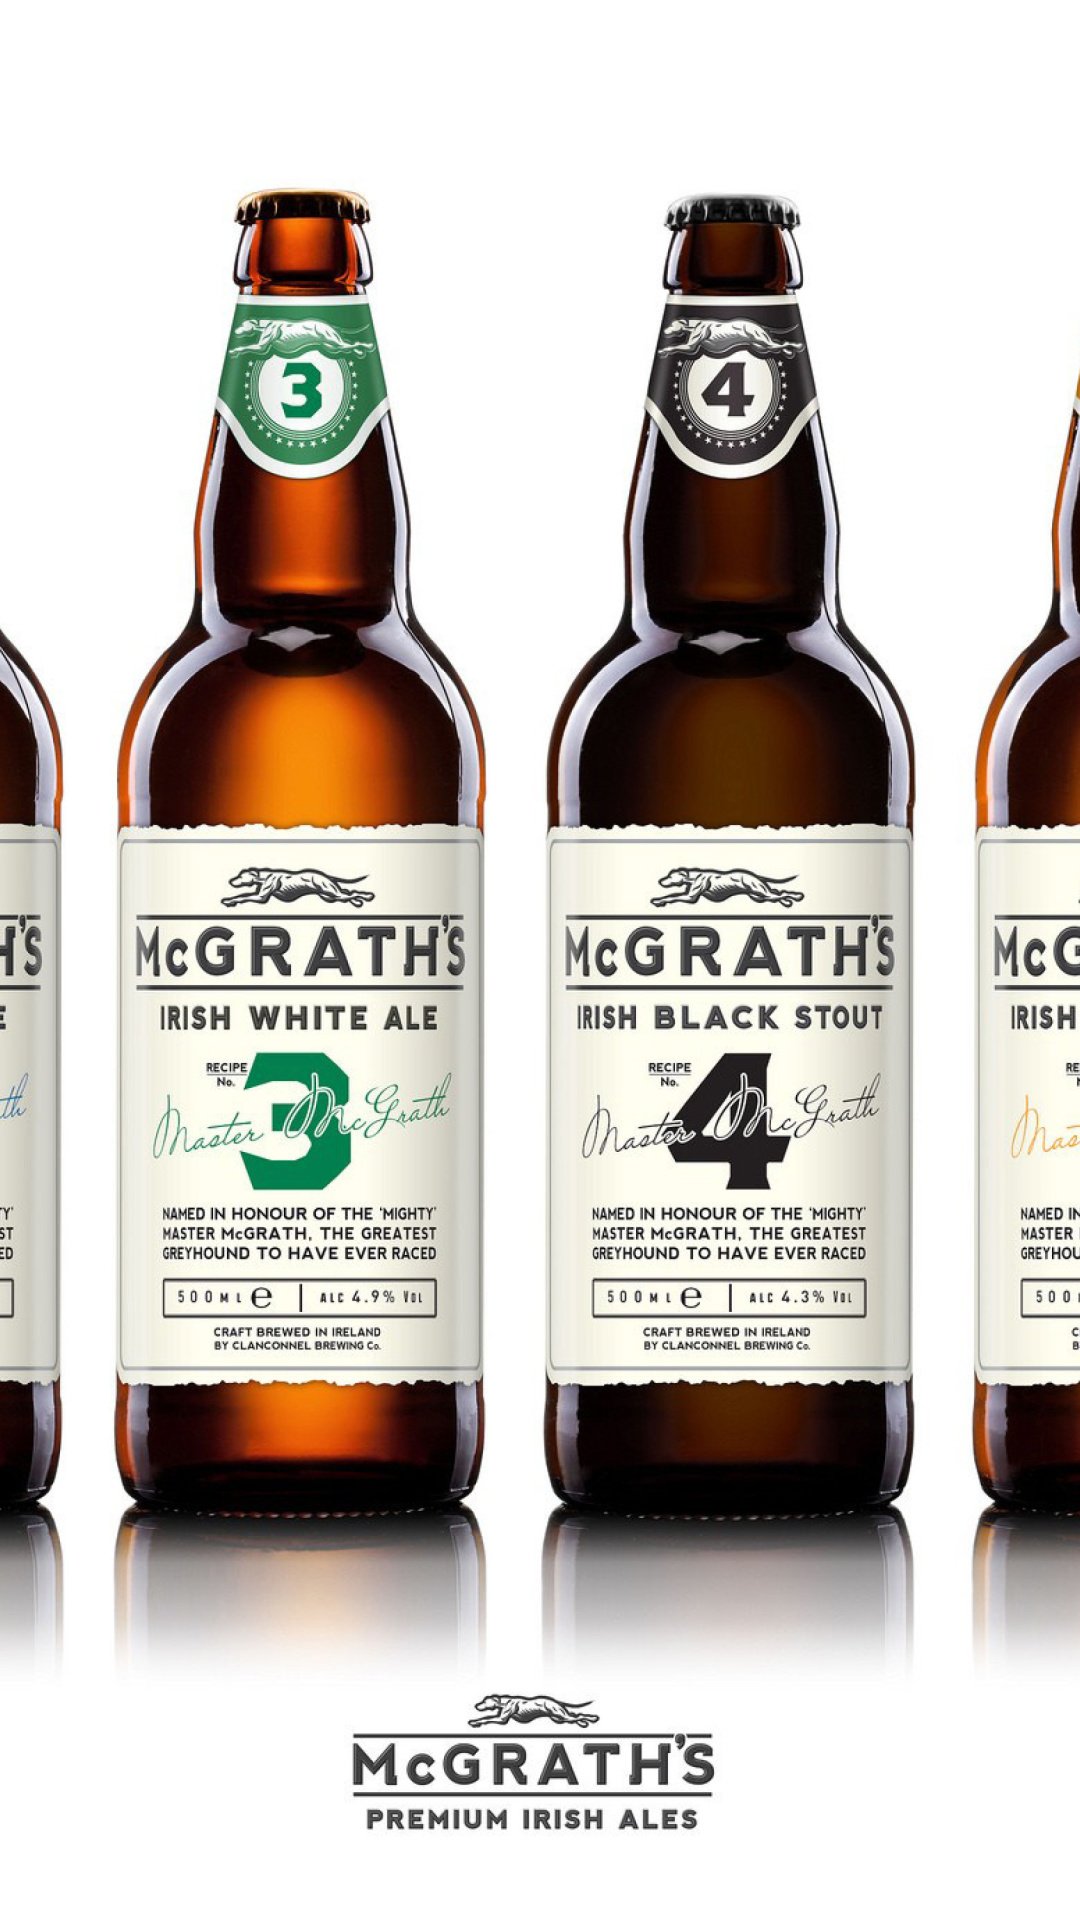 McGraths Premium Irish Ales wallpaper 1080x1920